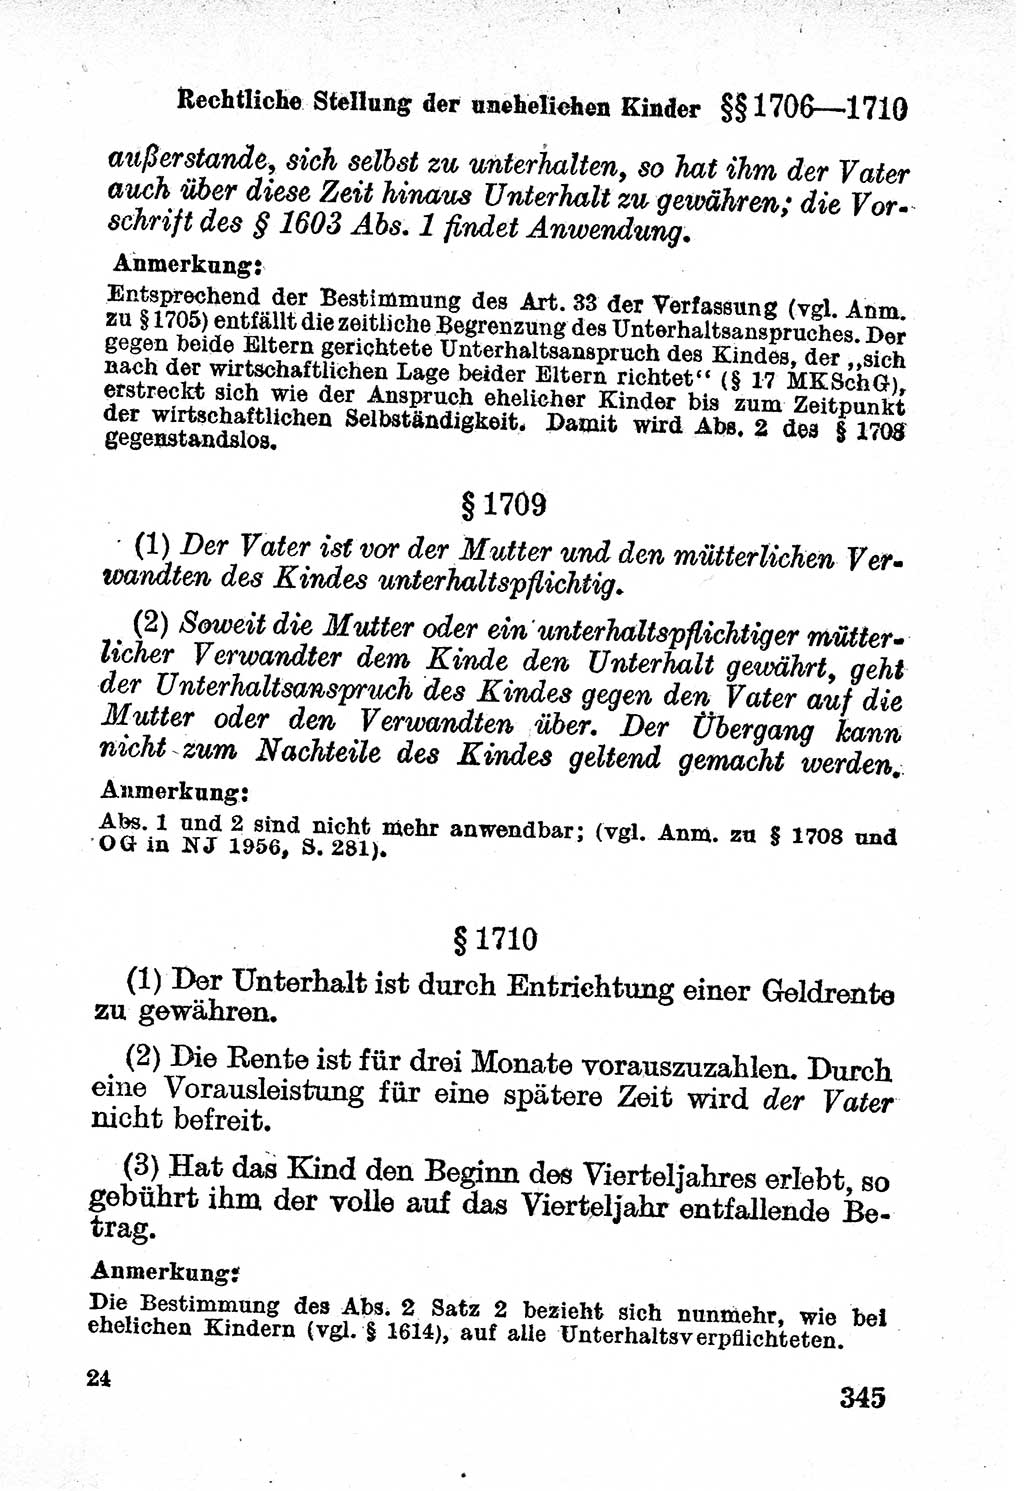 Bürgerliches Gesetzbuch (BGB) nebst wichtigen Nebengesetzen [Deutsche Demokratische Republik (DDR)] 1956, Seite 345 (BGB Nebenges. DDR 1956, S. 345)